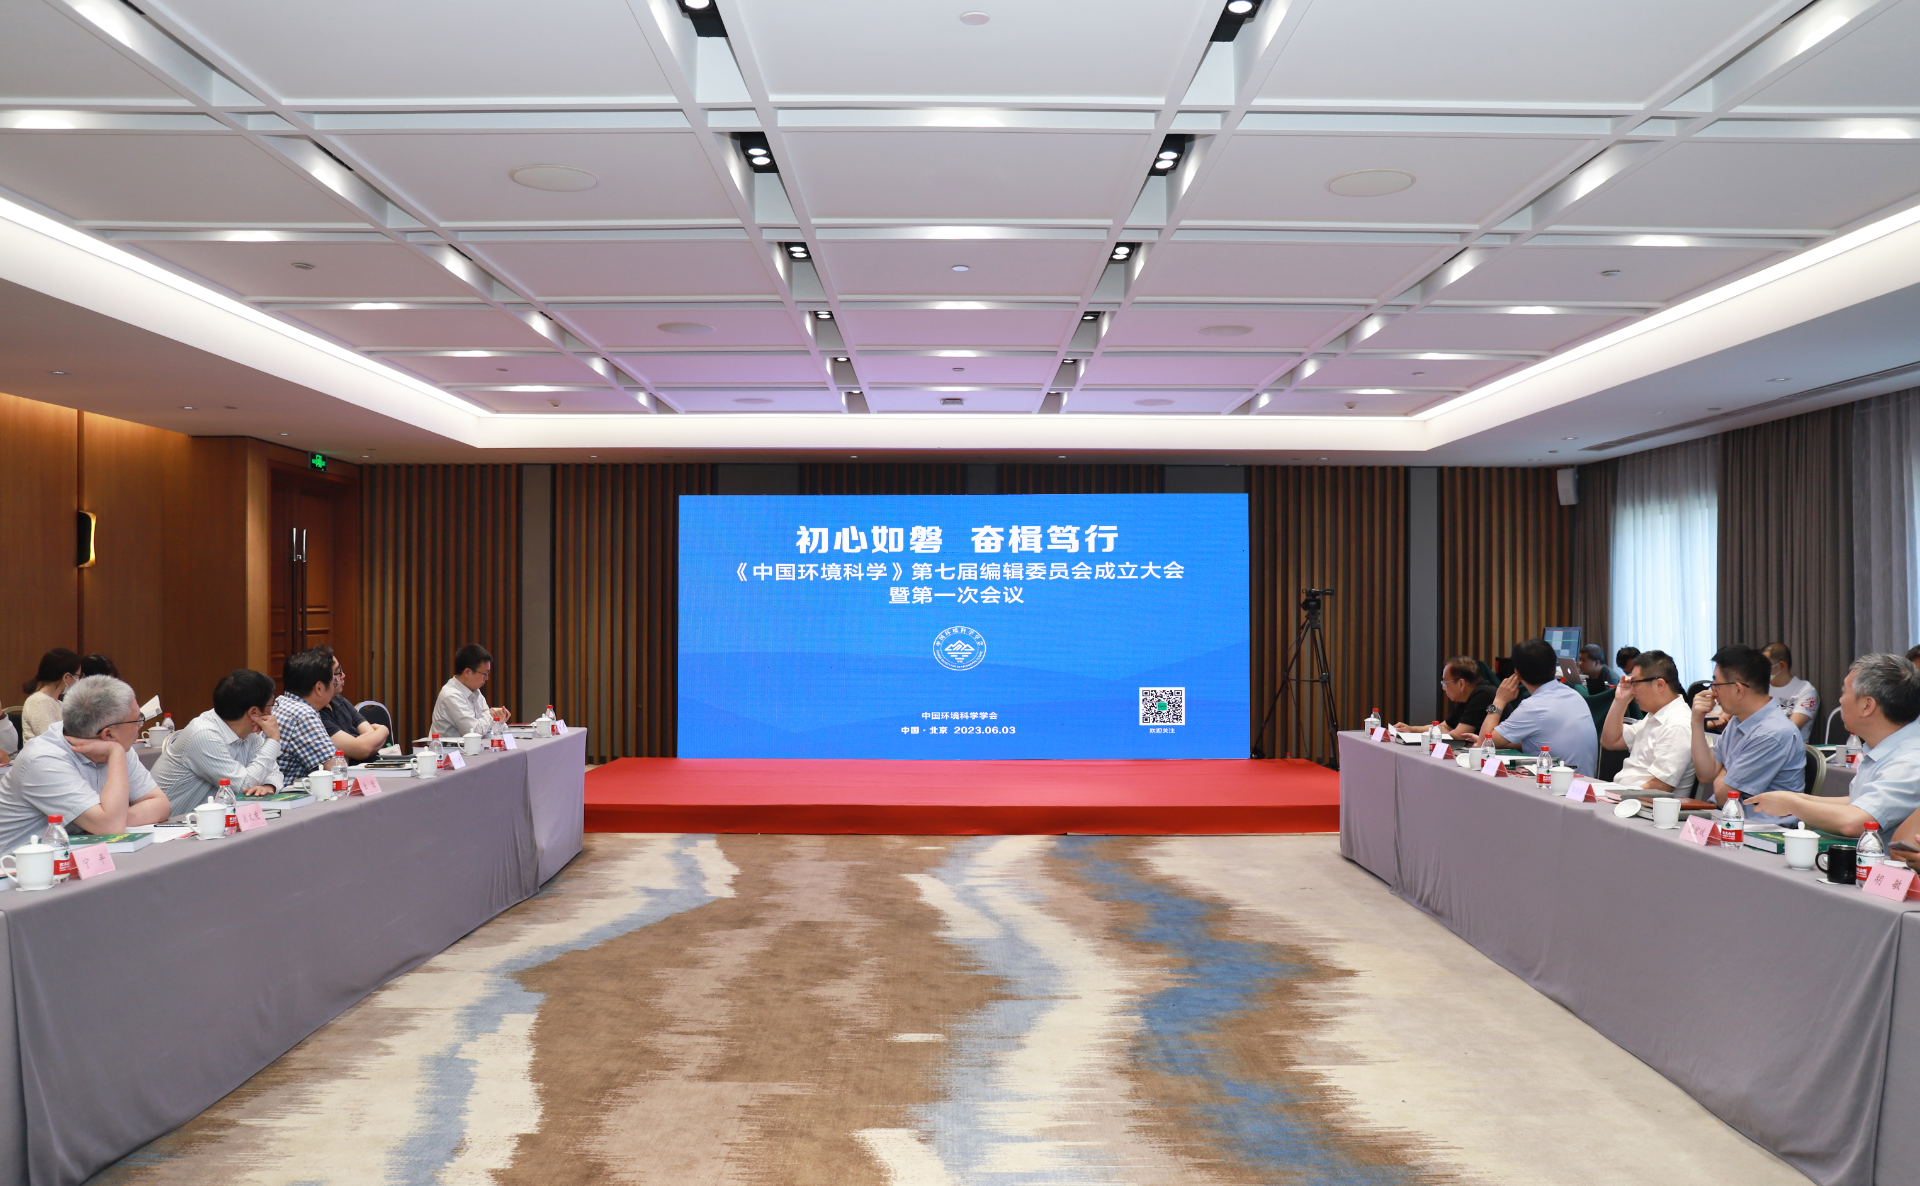 365体育官网《中国环境科学》第七届编辑委员会成立大会暨第一次会议成功举办